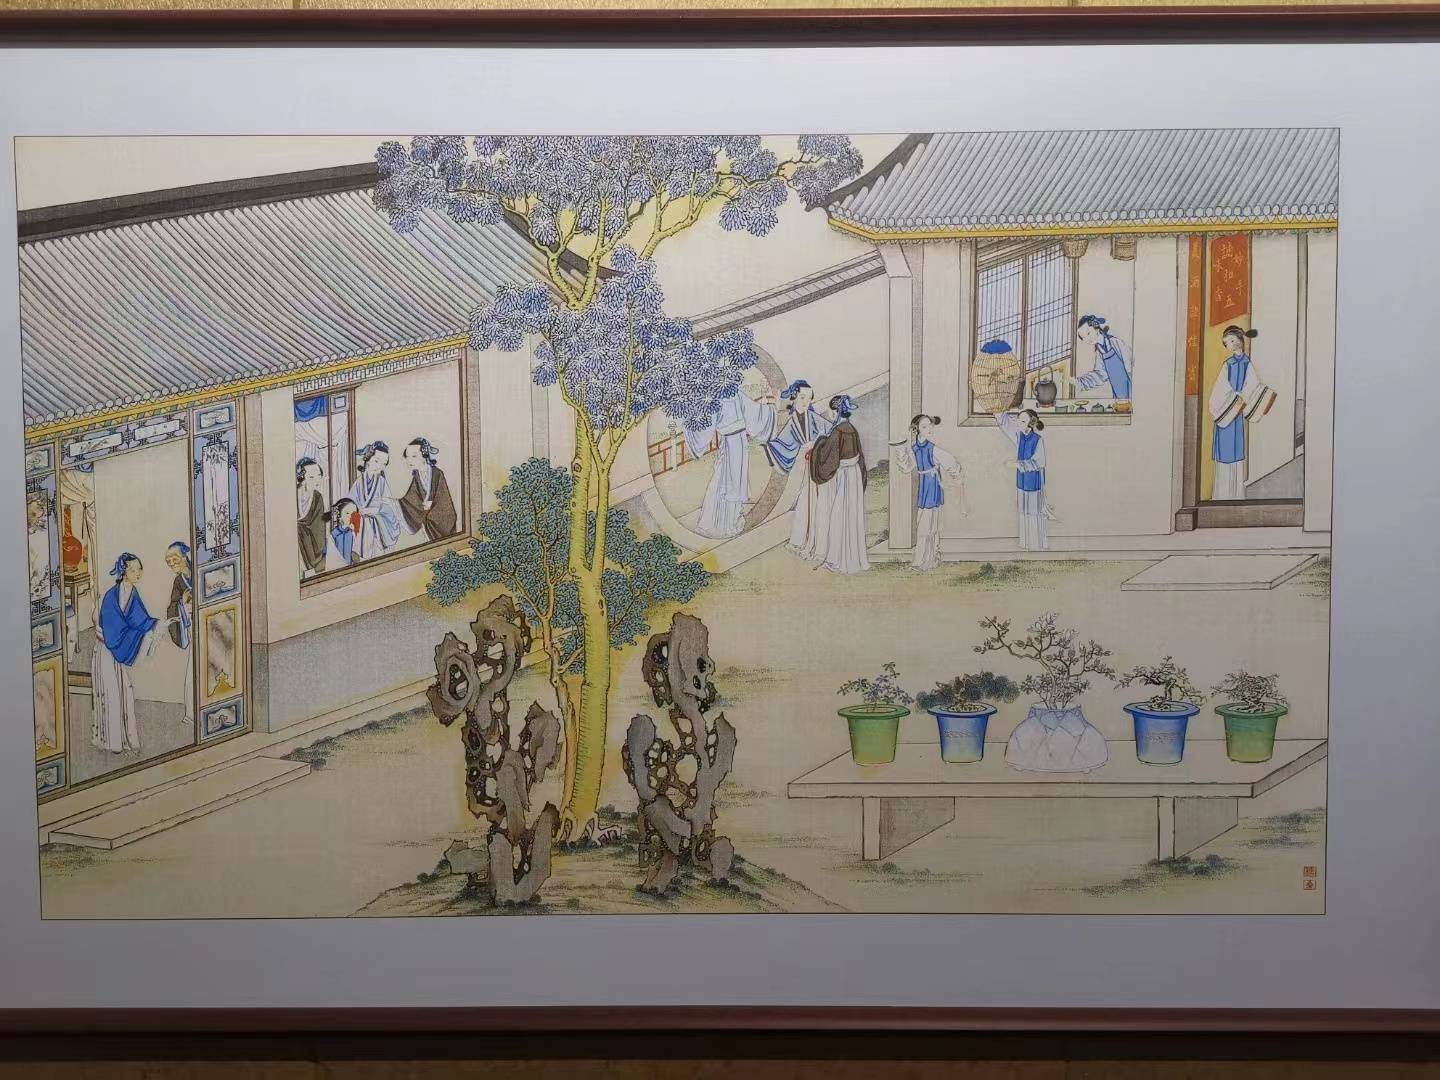 张柳——创新中原，“智造”瓷画第一人